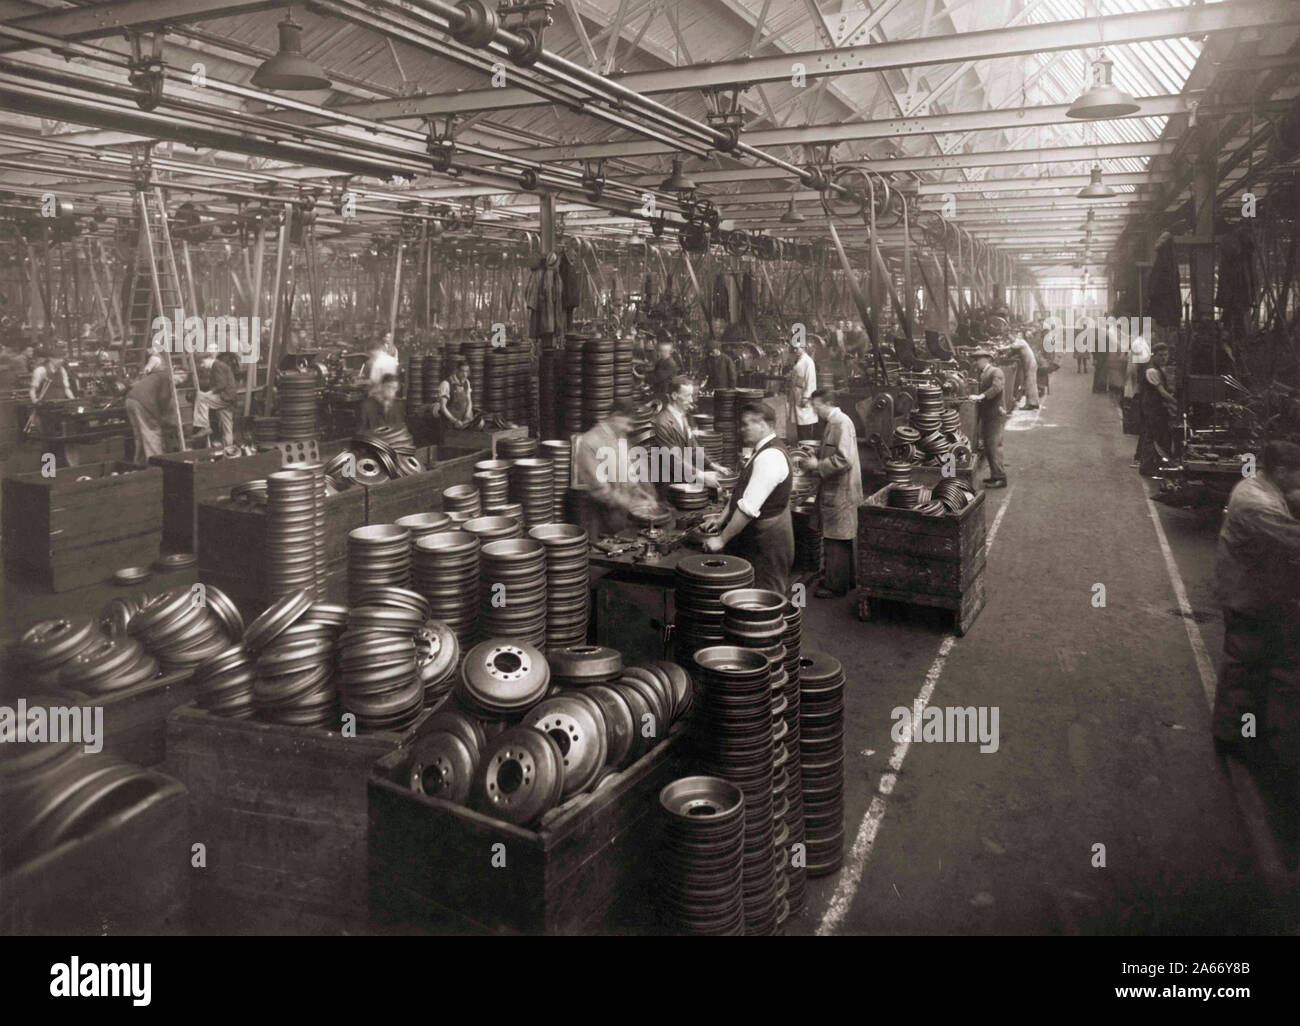 Wolseley Motors intérieur près de Birmingham dans les années 30. Préparer les travailleurs enjoliveurs. Banque D'Images